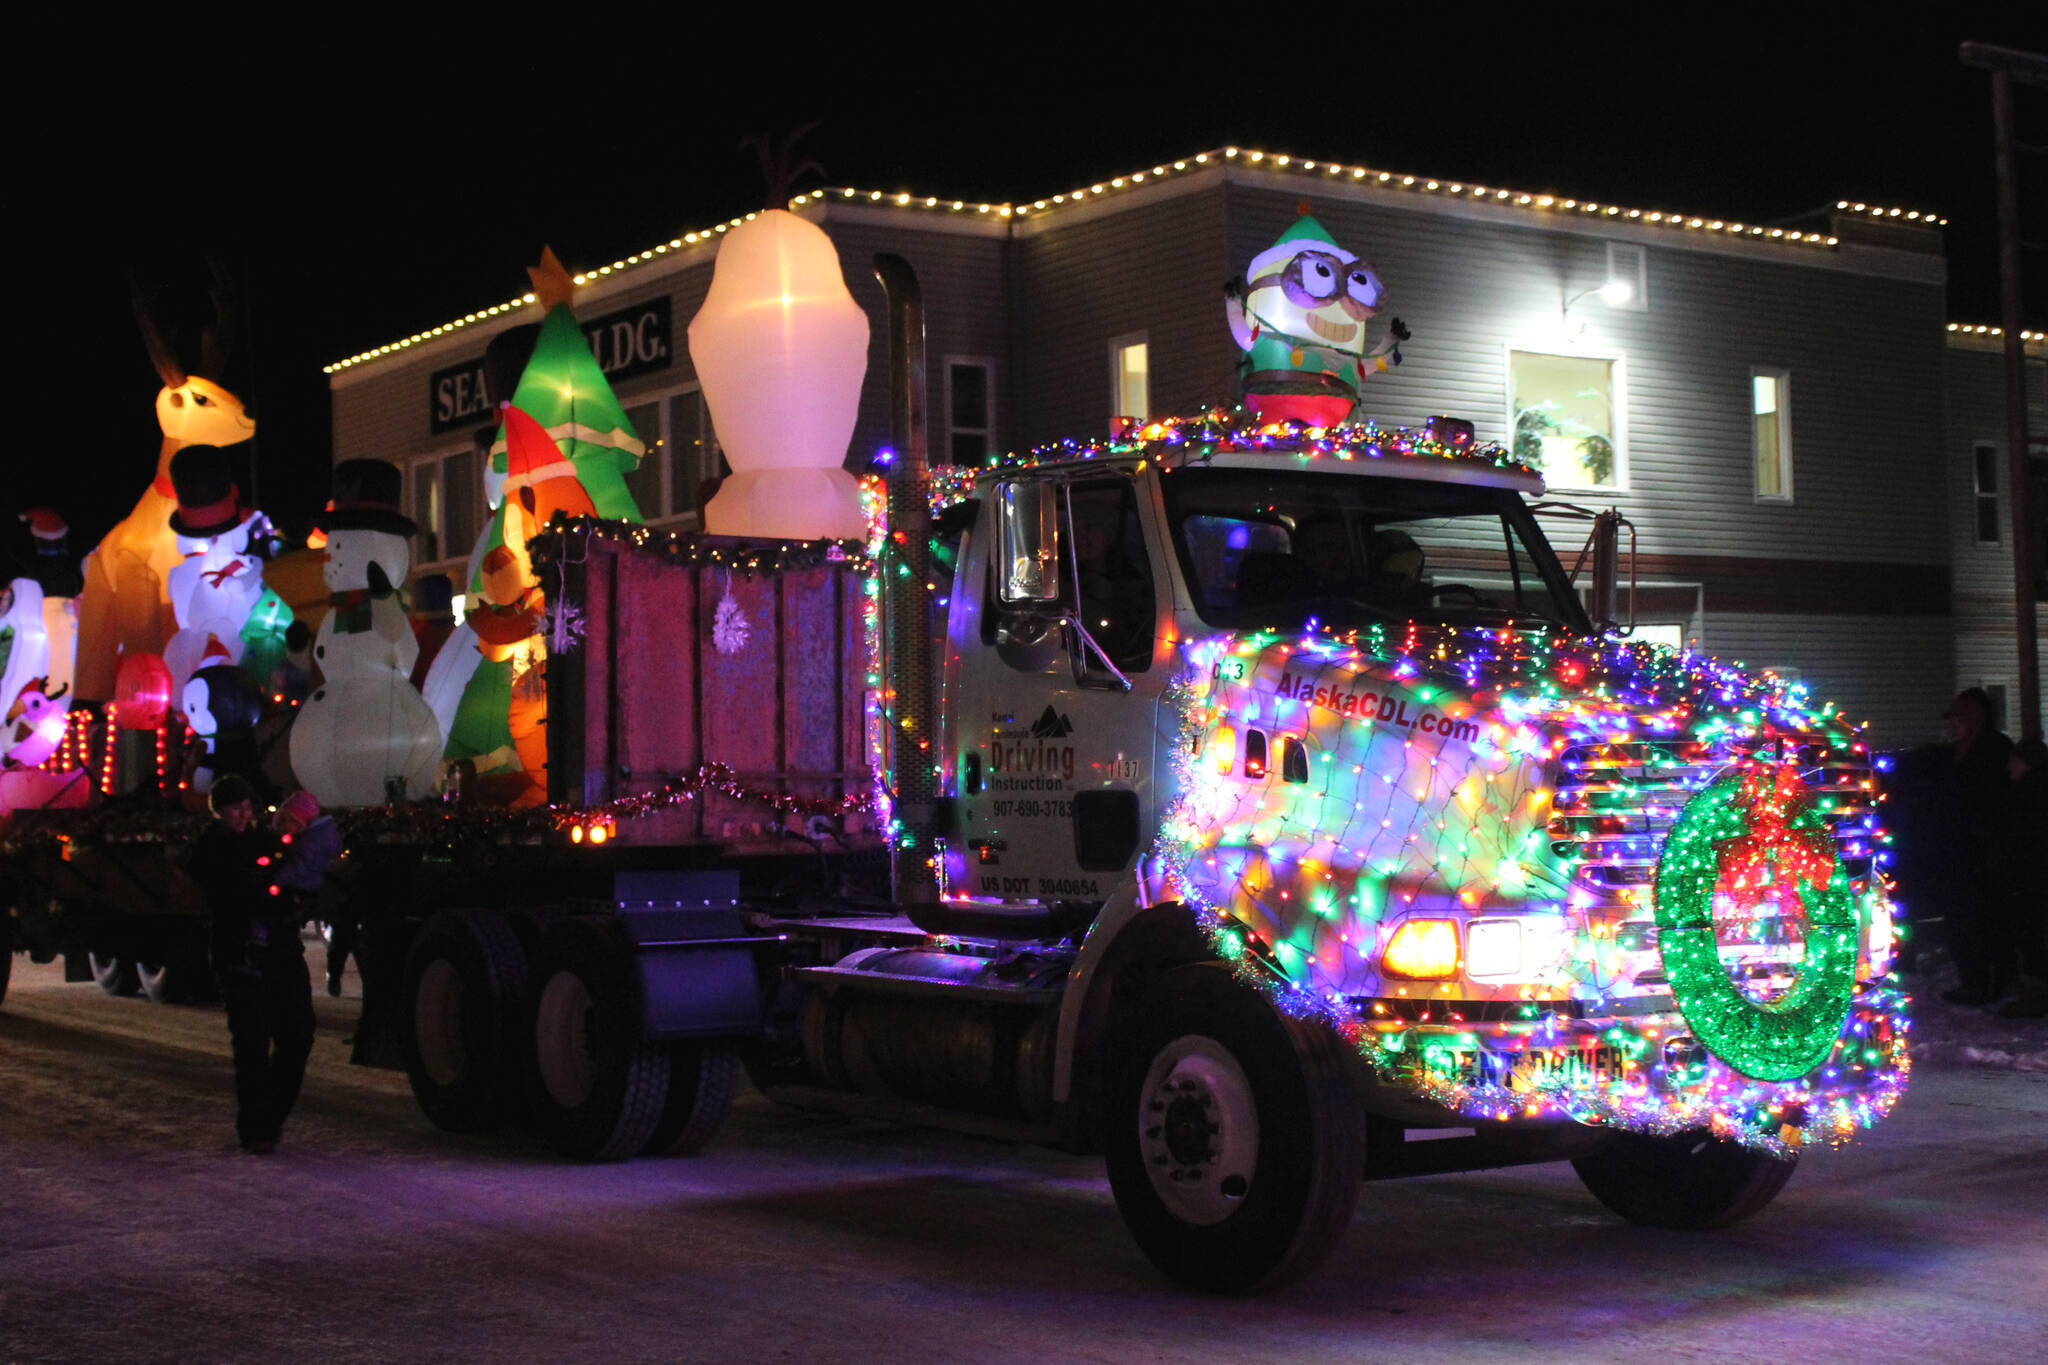 A decorated truck owned by Kenai Peninsula Driving Instruction participates in the “Christmas Comes to Kenai” parade on Friday, Nov. 26, 2021 in Kenai, Alaska. (Ashlyn O’Hara/Peninsula Clarion)